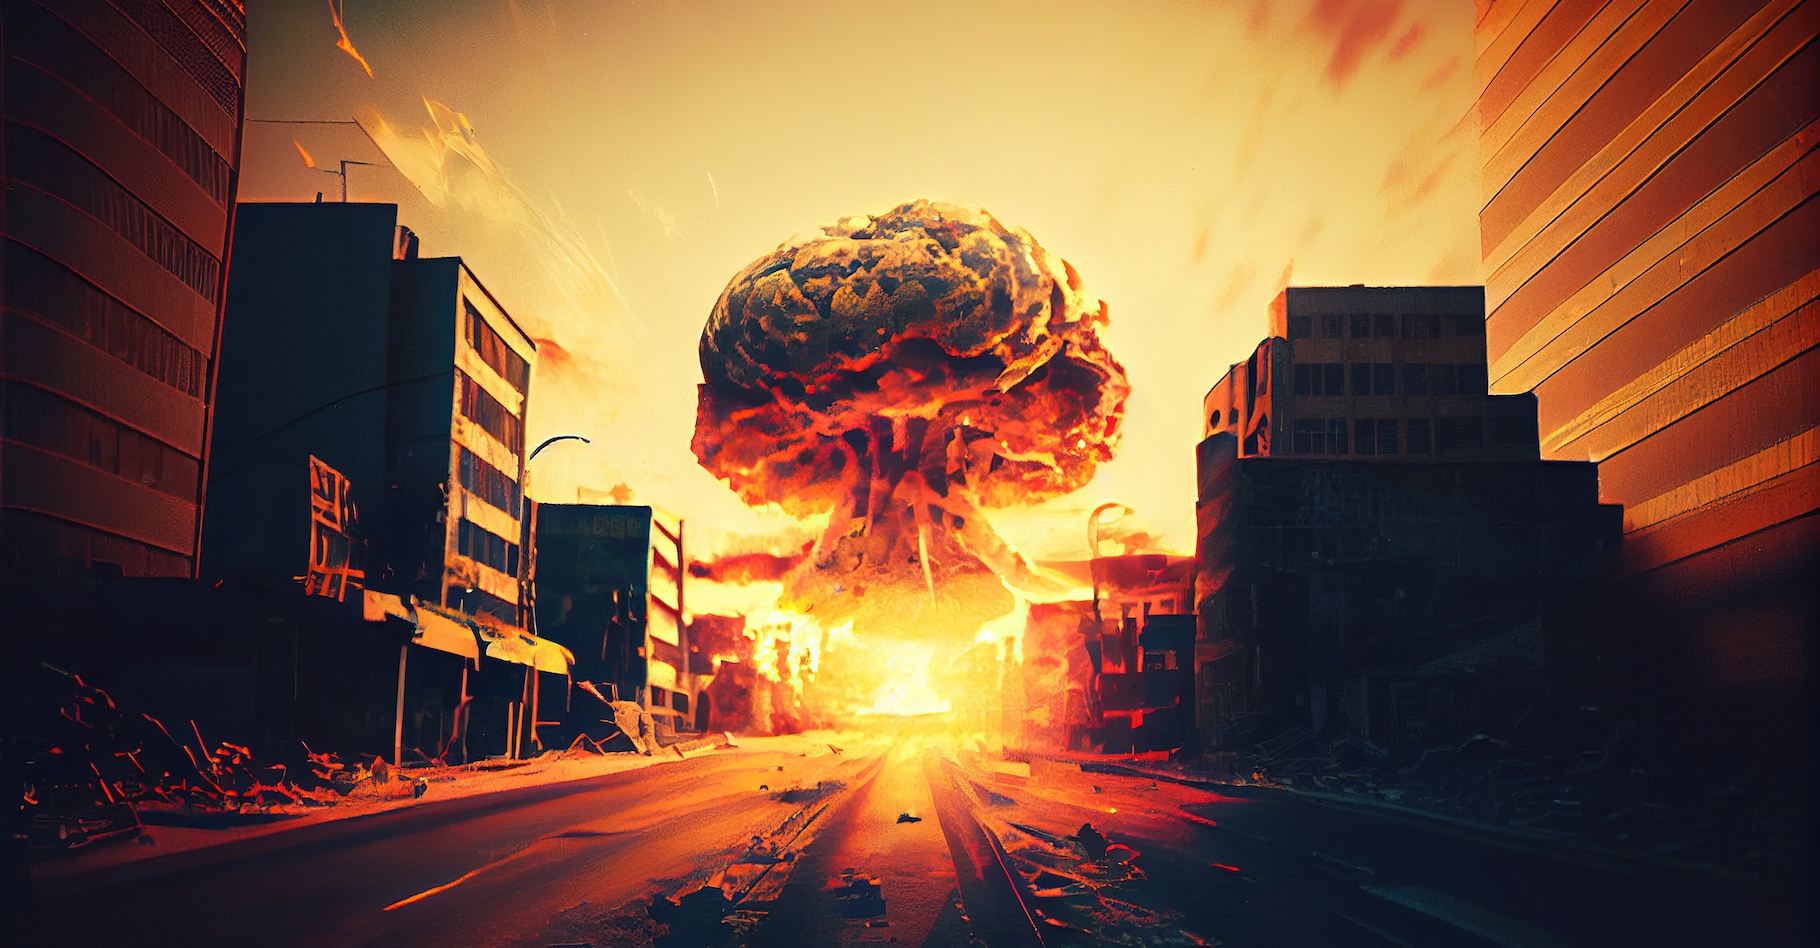 Des chercheurs de l’université de Nicosie (Chypre) ont simulé l’impact d’une onde de choc sur un bâtiment en béton armé pour savoir où il est préférable de s’abriter en cas d’explosion nucléaire. © designprojects, Adobe Stock